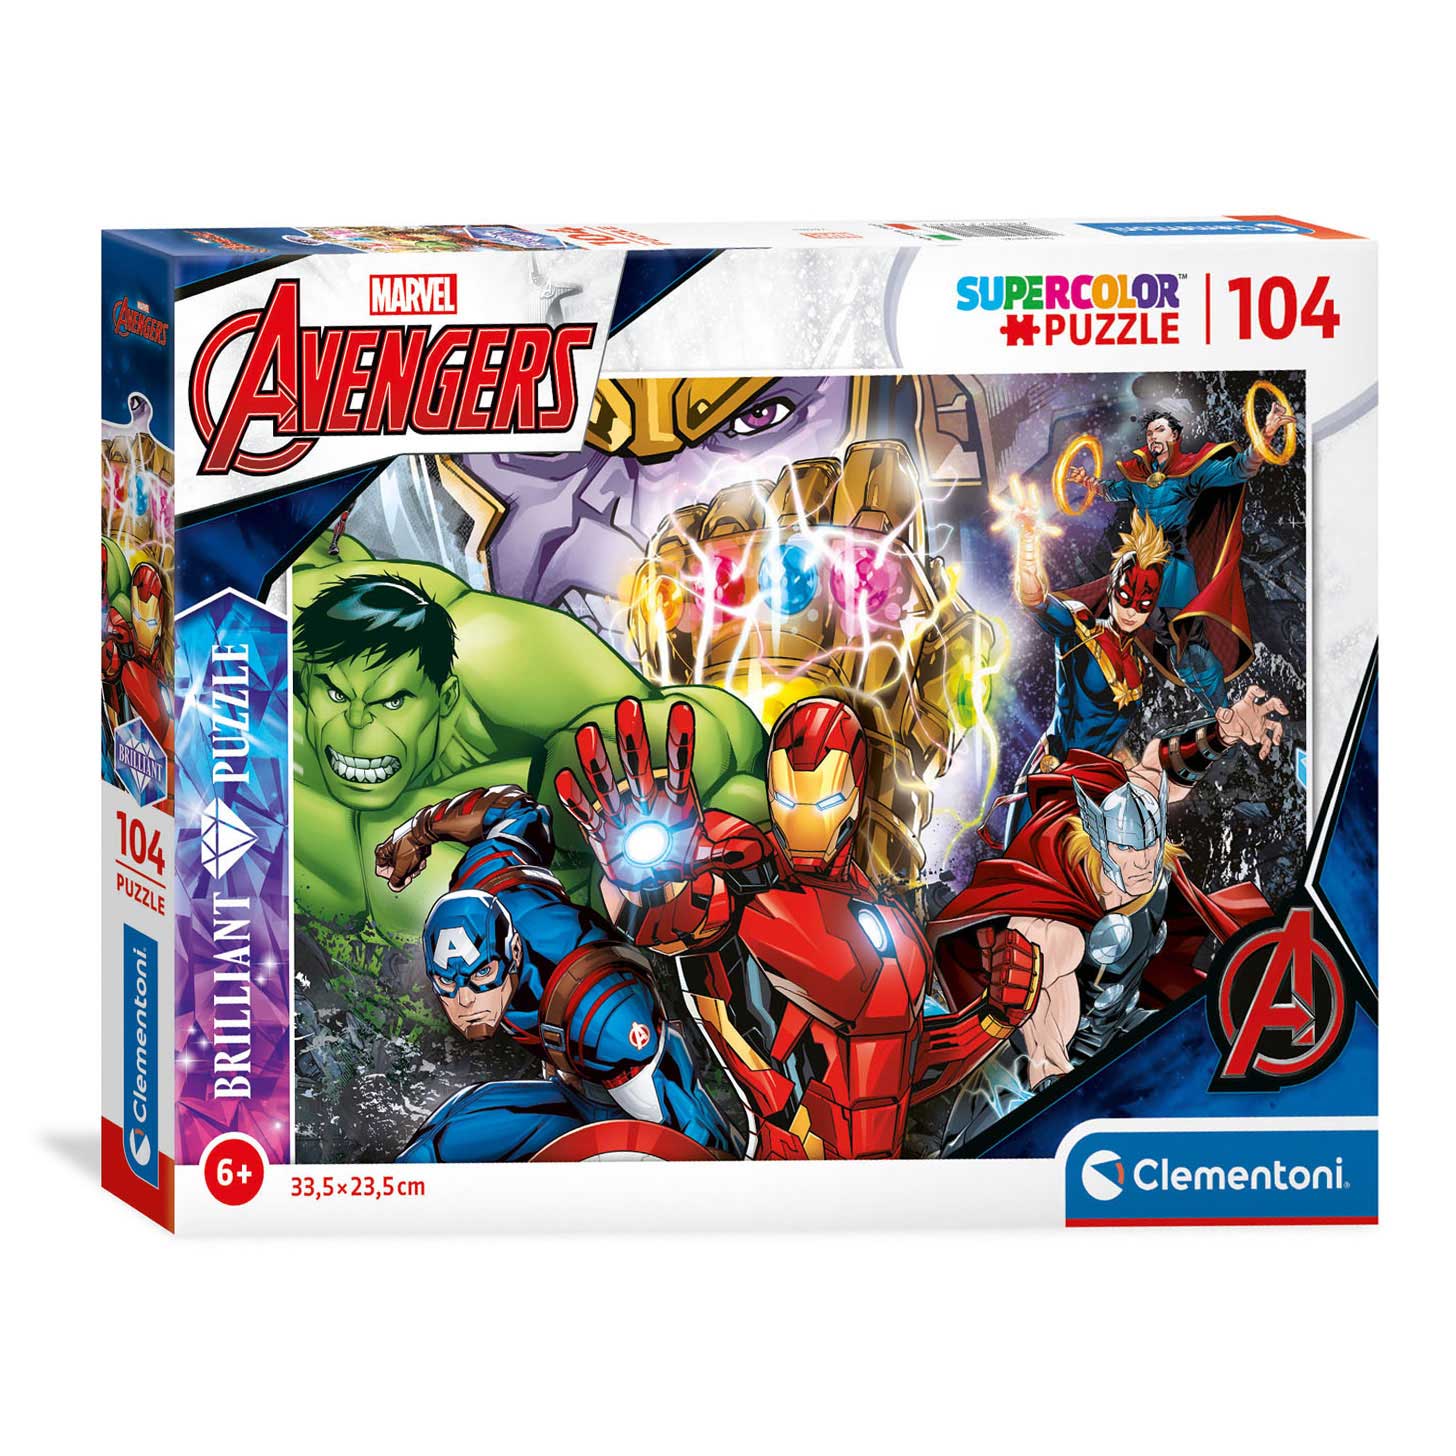 Buy Clementoni Puzzle 3d Marvel Avengers 104 Pieces Online at ELC